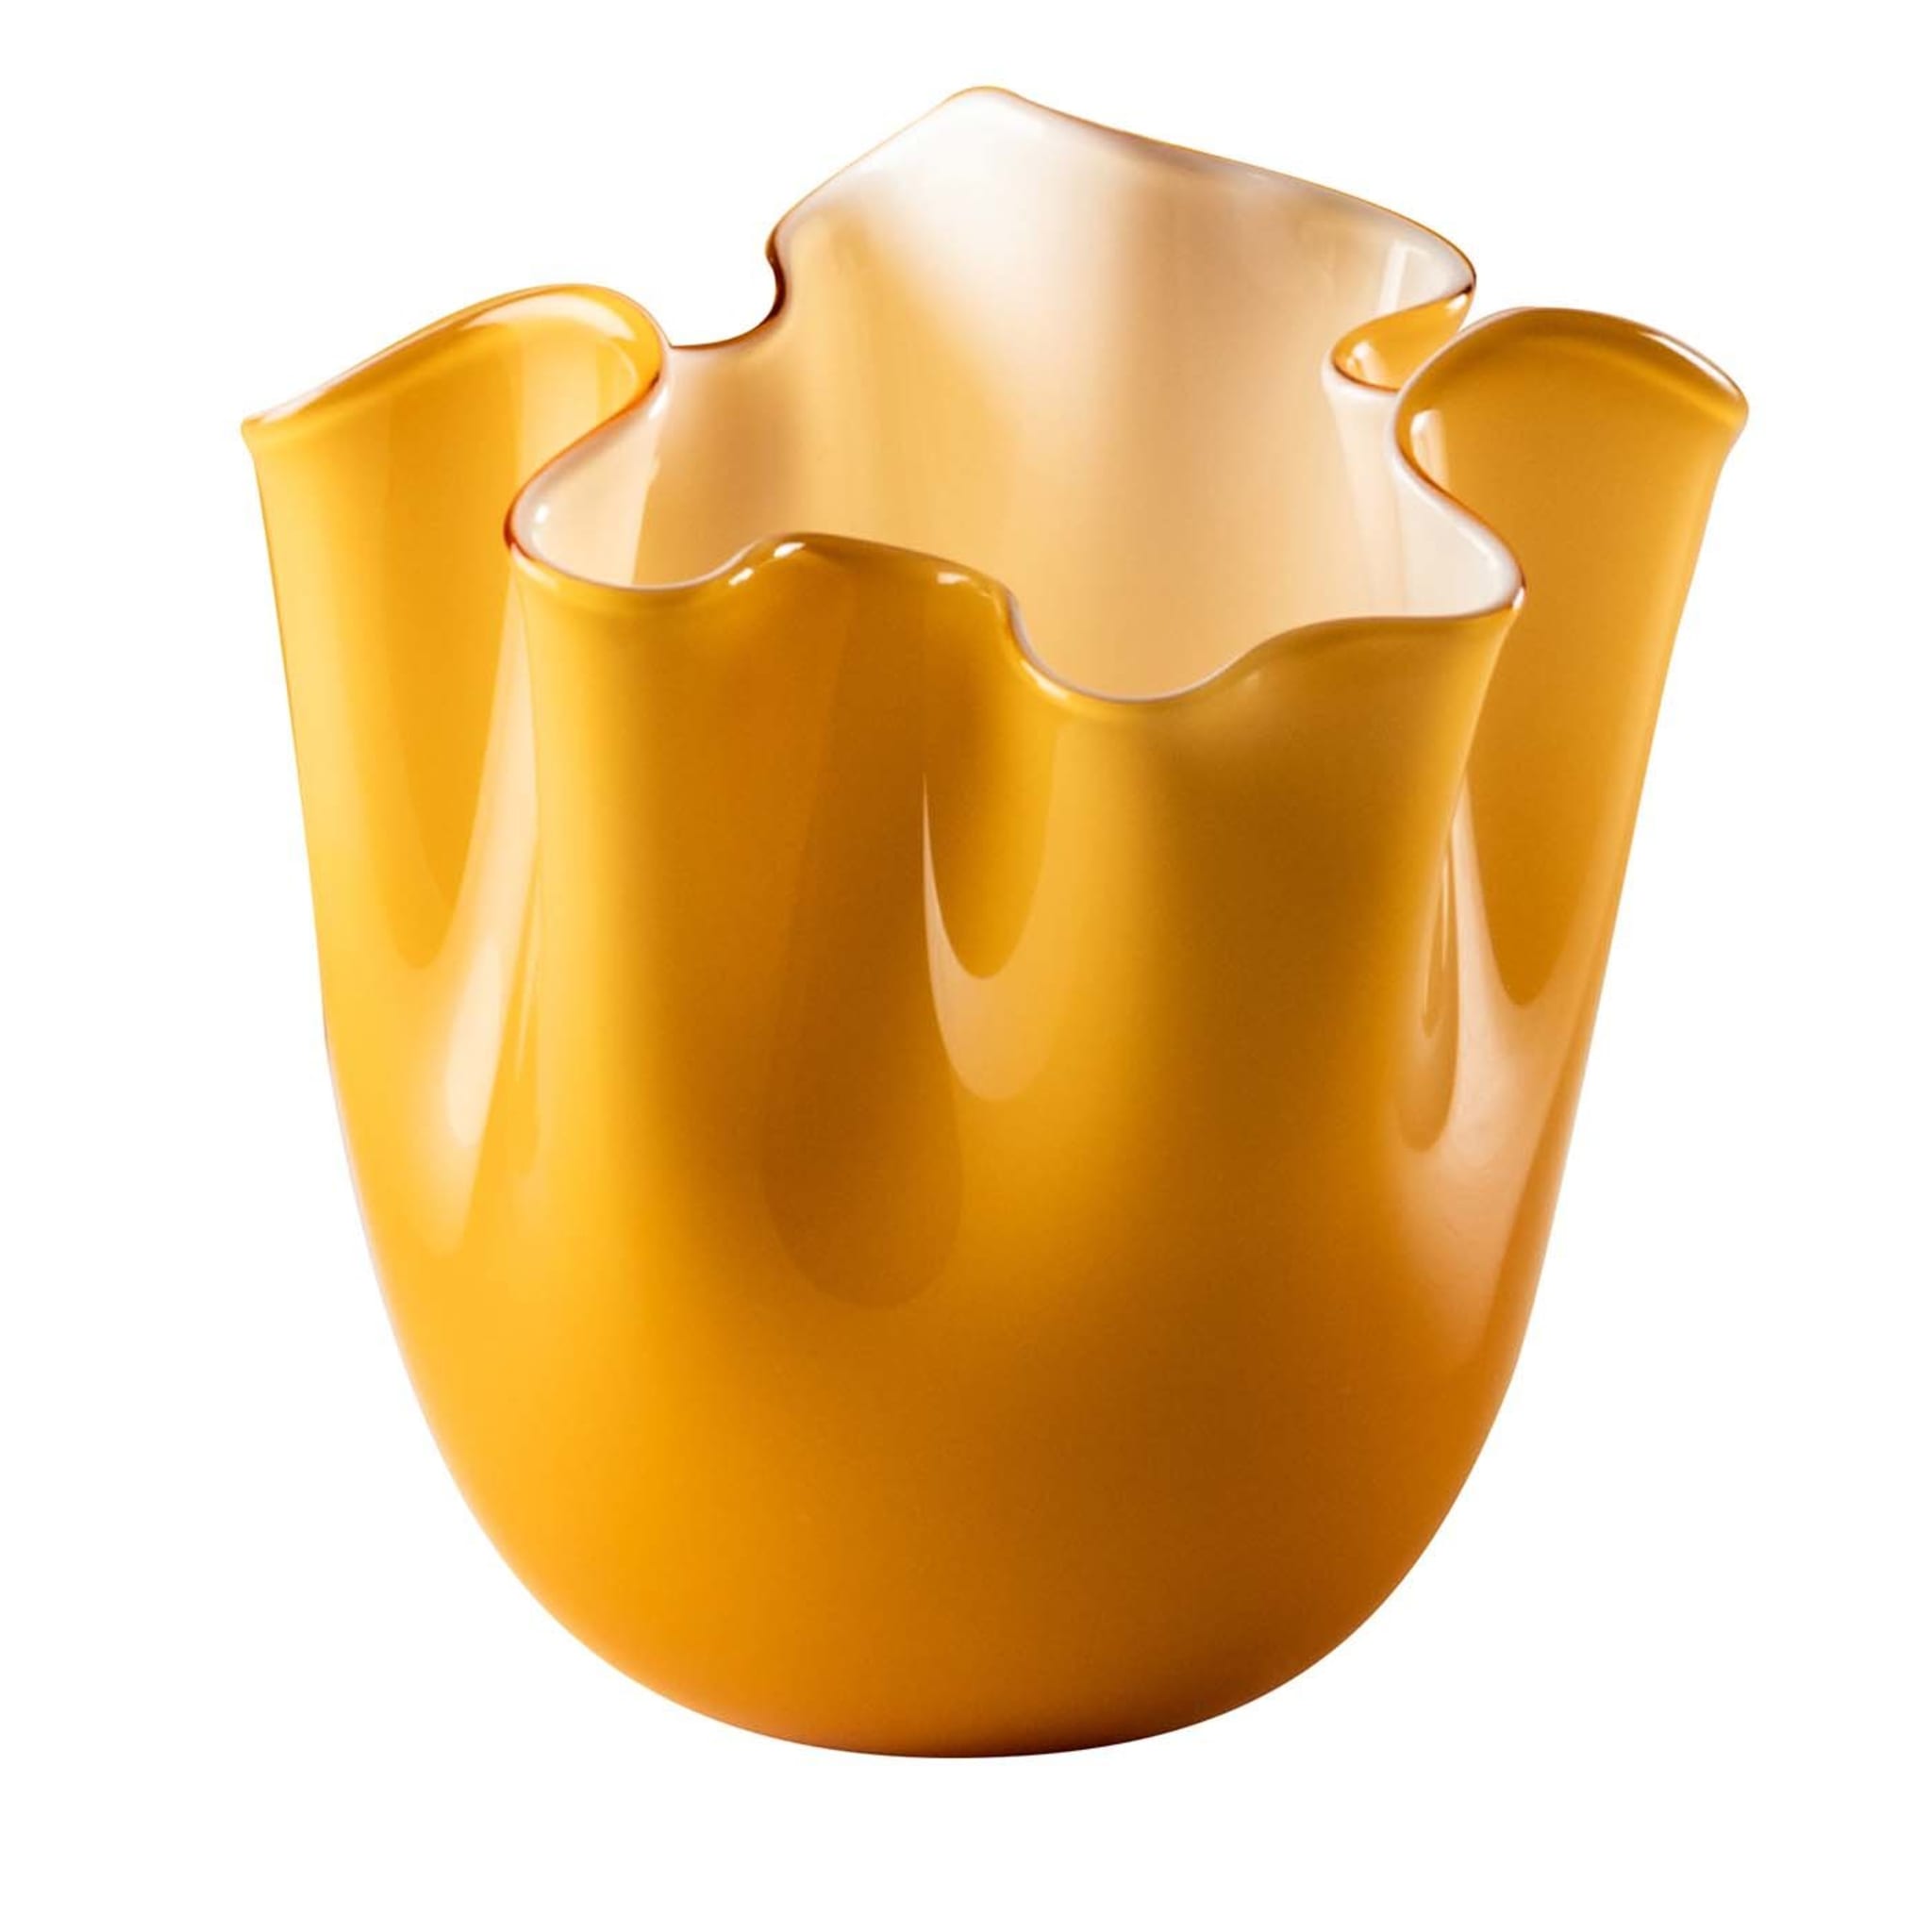 Fazzoletti Opaline Small Amber Vase by Fulvio Bianconi and Paolo Venini - Main view